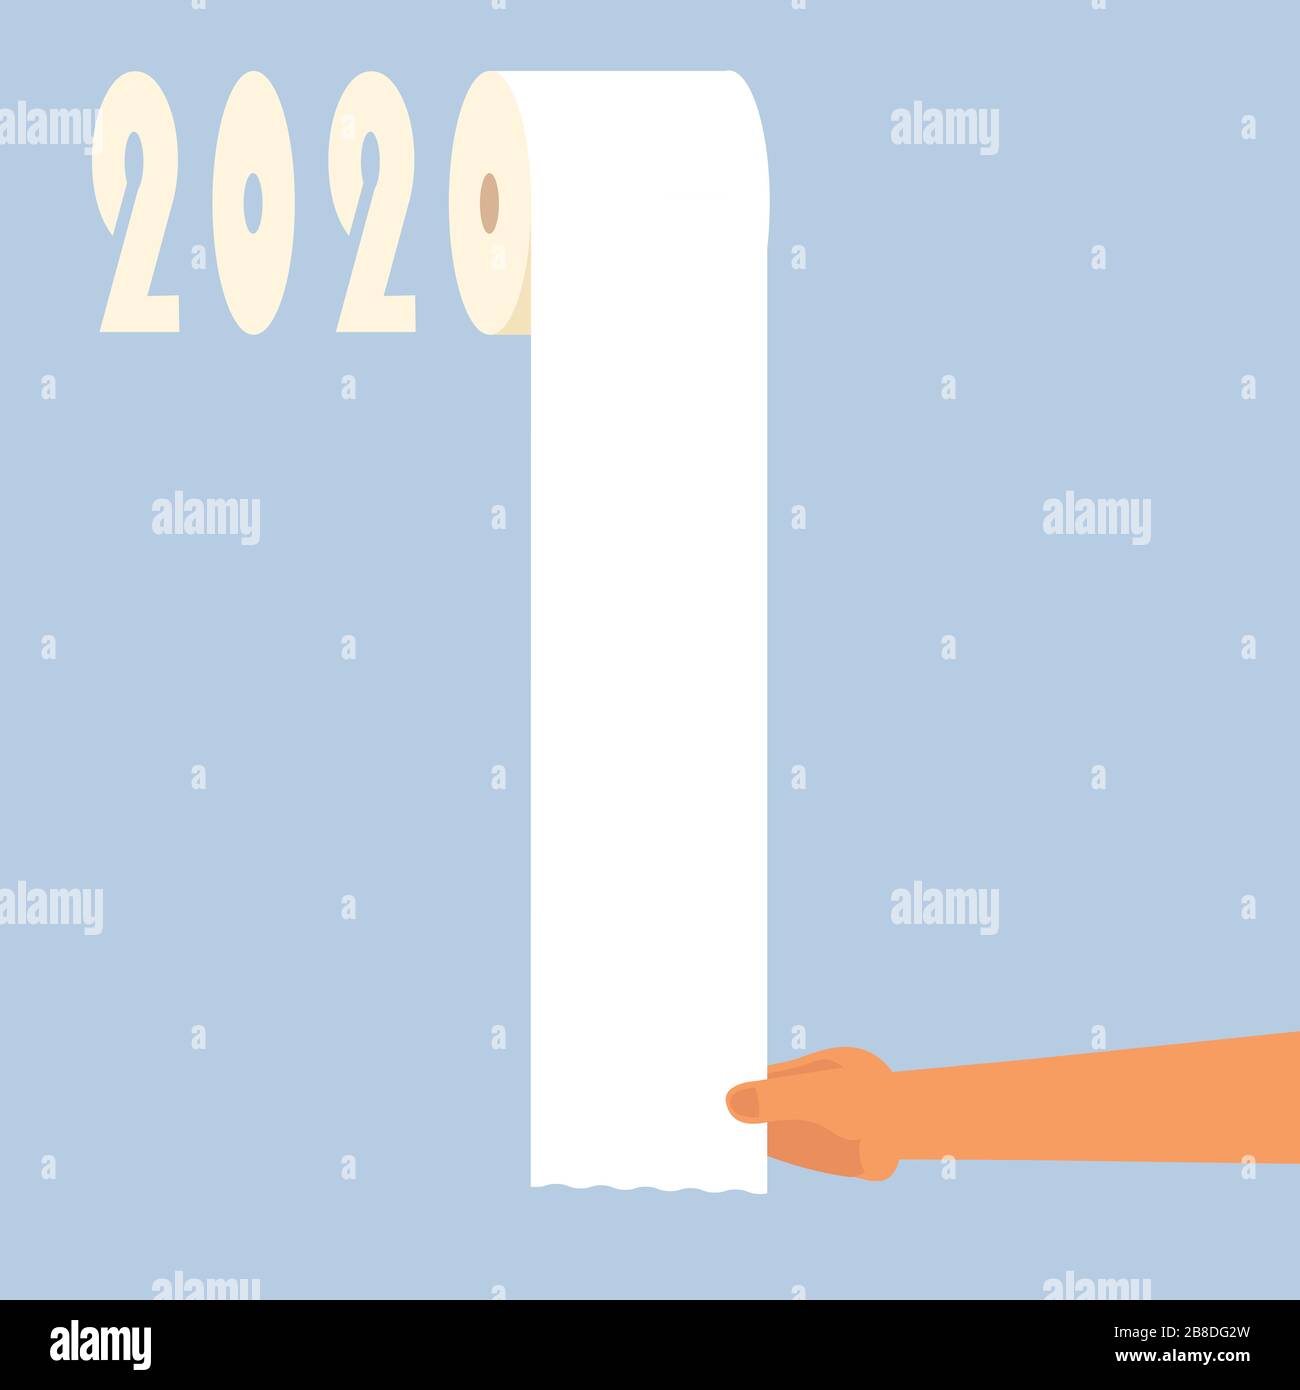 mano che tira la carta da bagno - illustrazione di richiesta elevata per carta igienica in 2020 Illustrazione Vettoriale